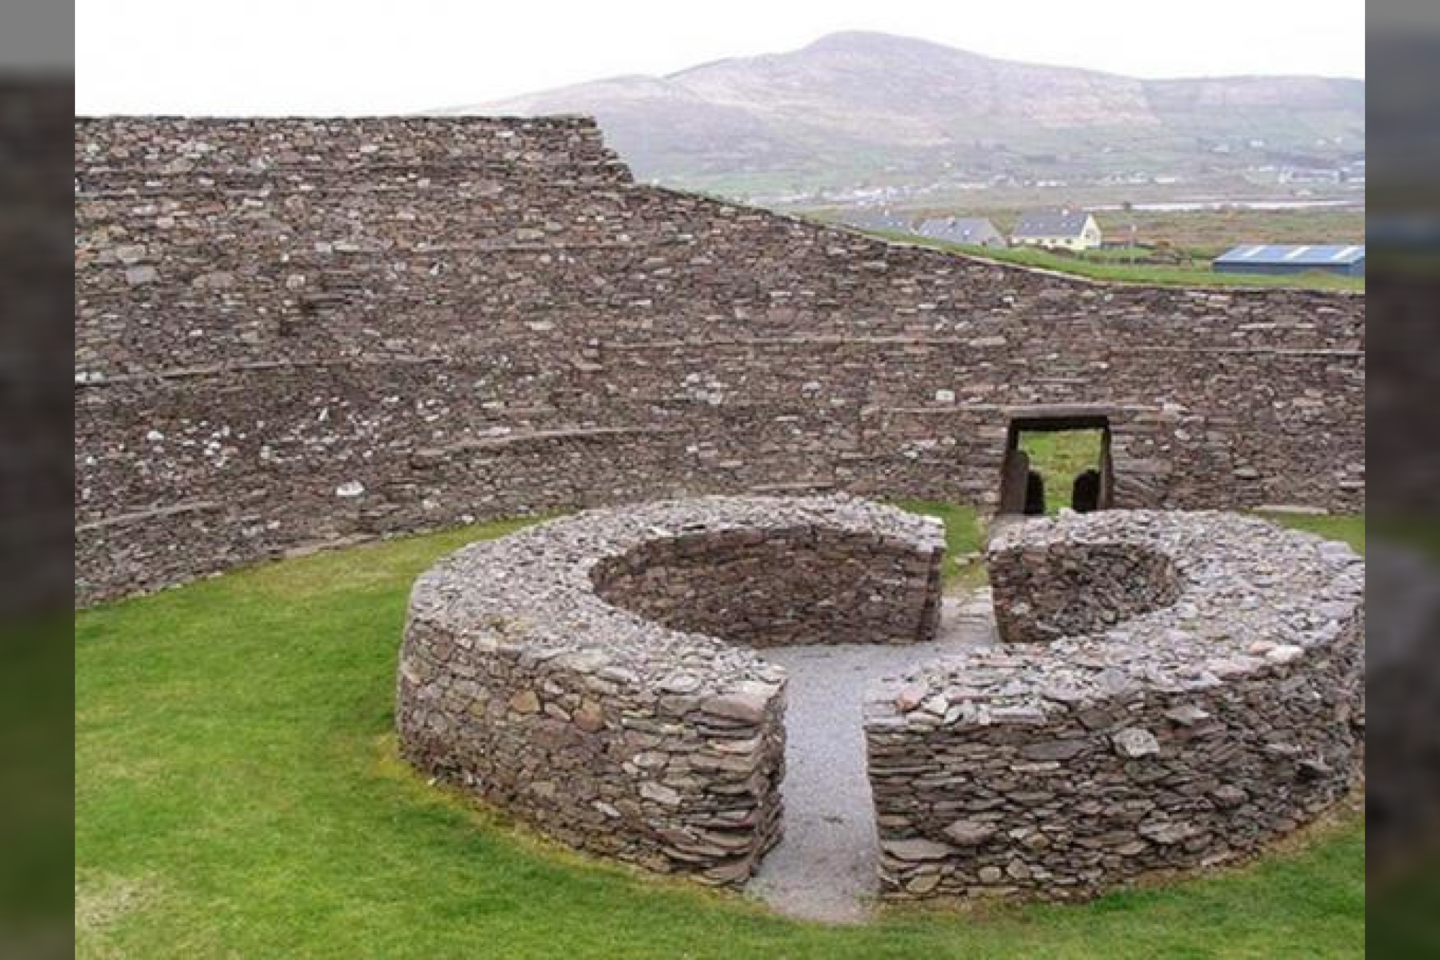  Airių žiedo formos fortai supo senovines gyvenvietes, kurios dar buvo apsuptos pylimais ir grioviais.<br> Francis Bijl nuotr.